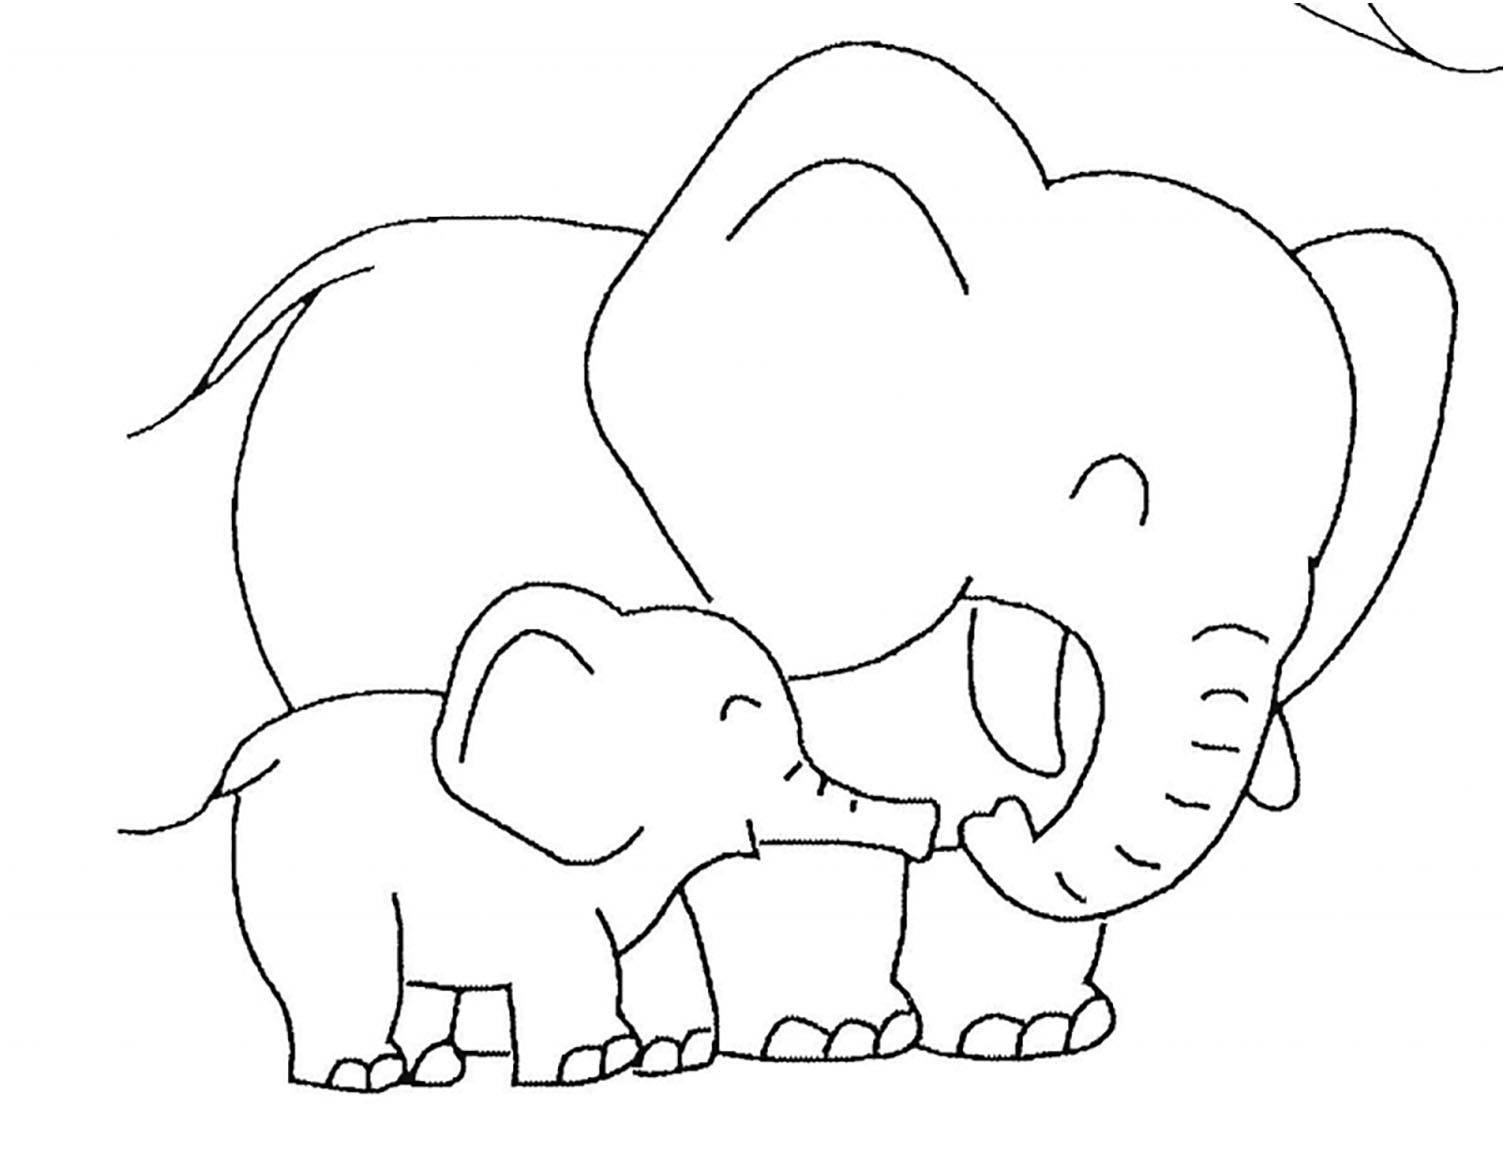 Dibujo de elefante para colorear, fácil para los niños